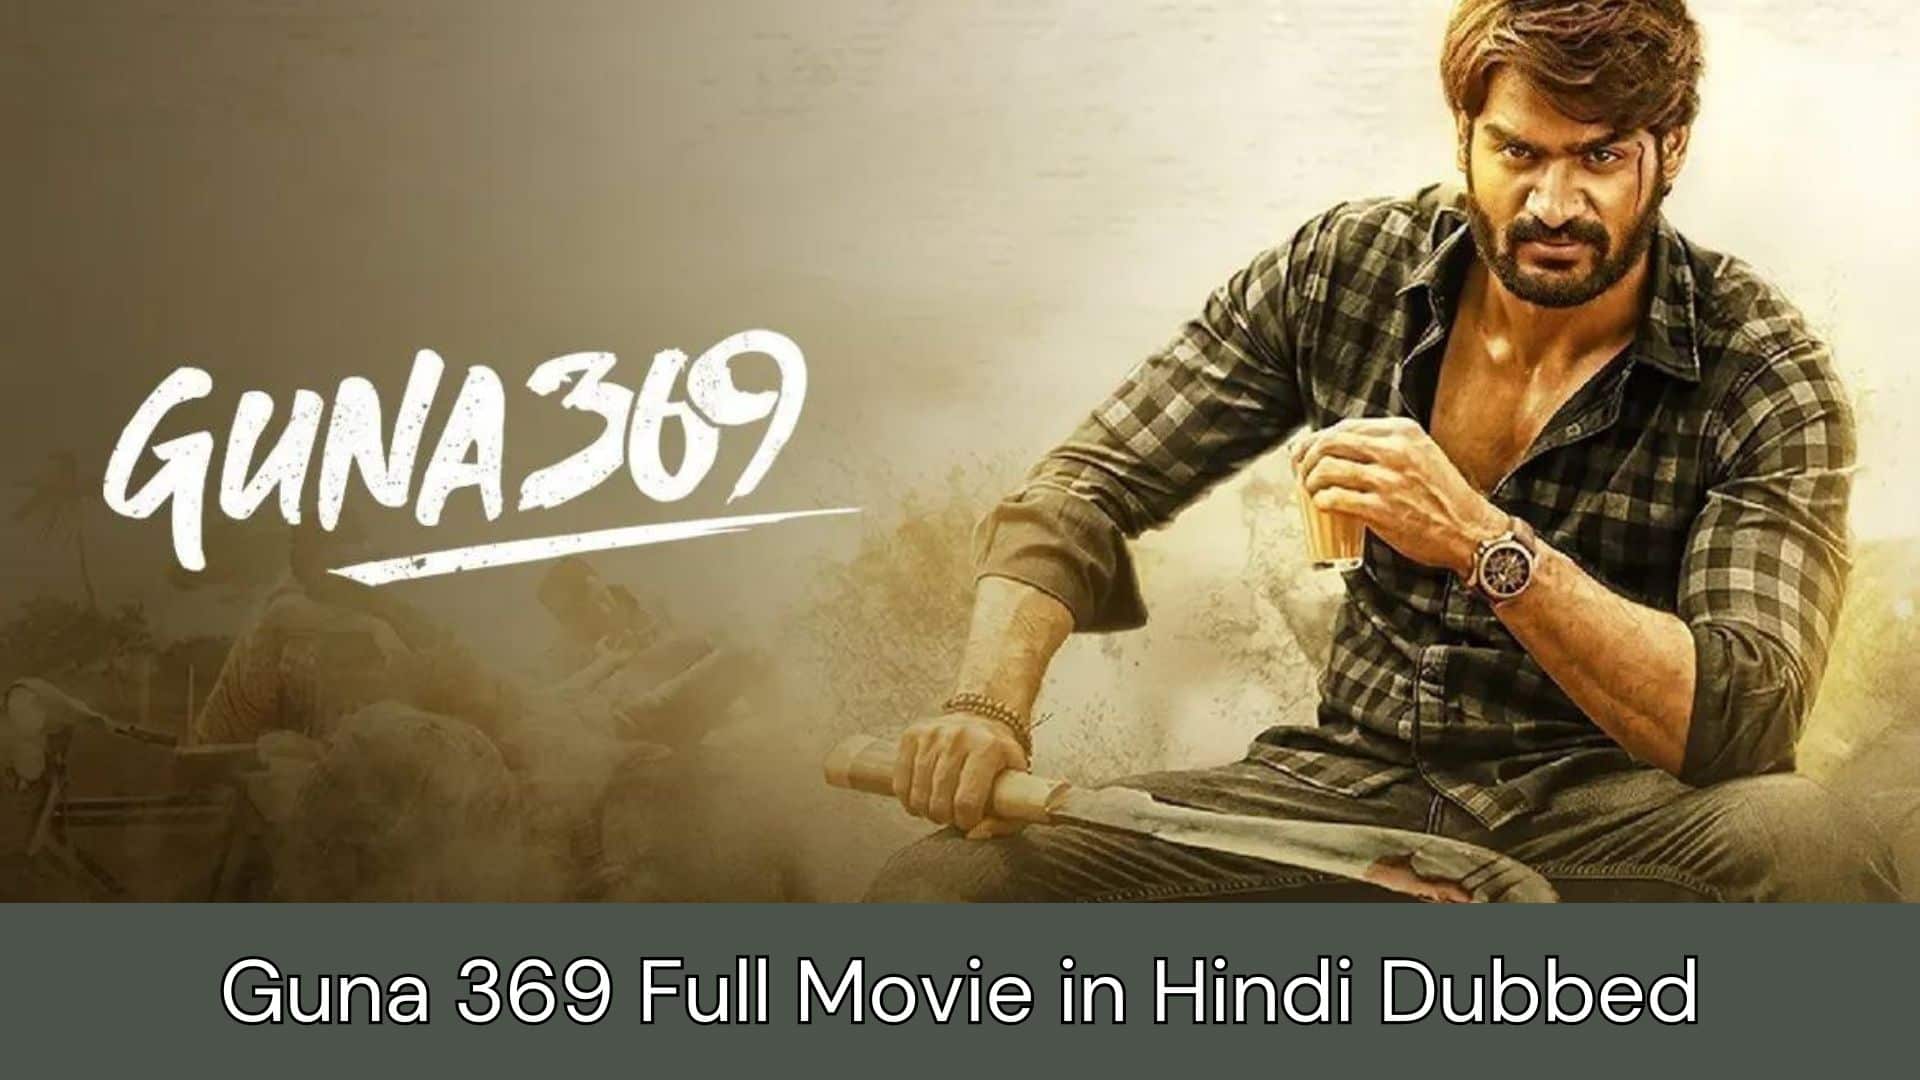 Guna 369 Full Movie Cast, Review, Release Date